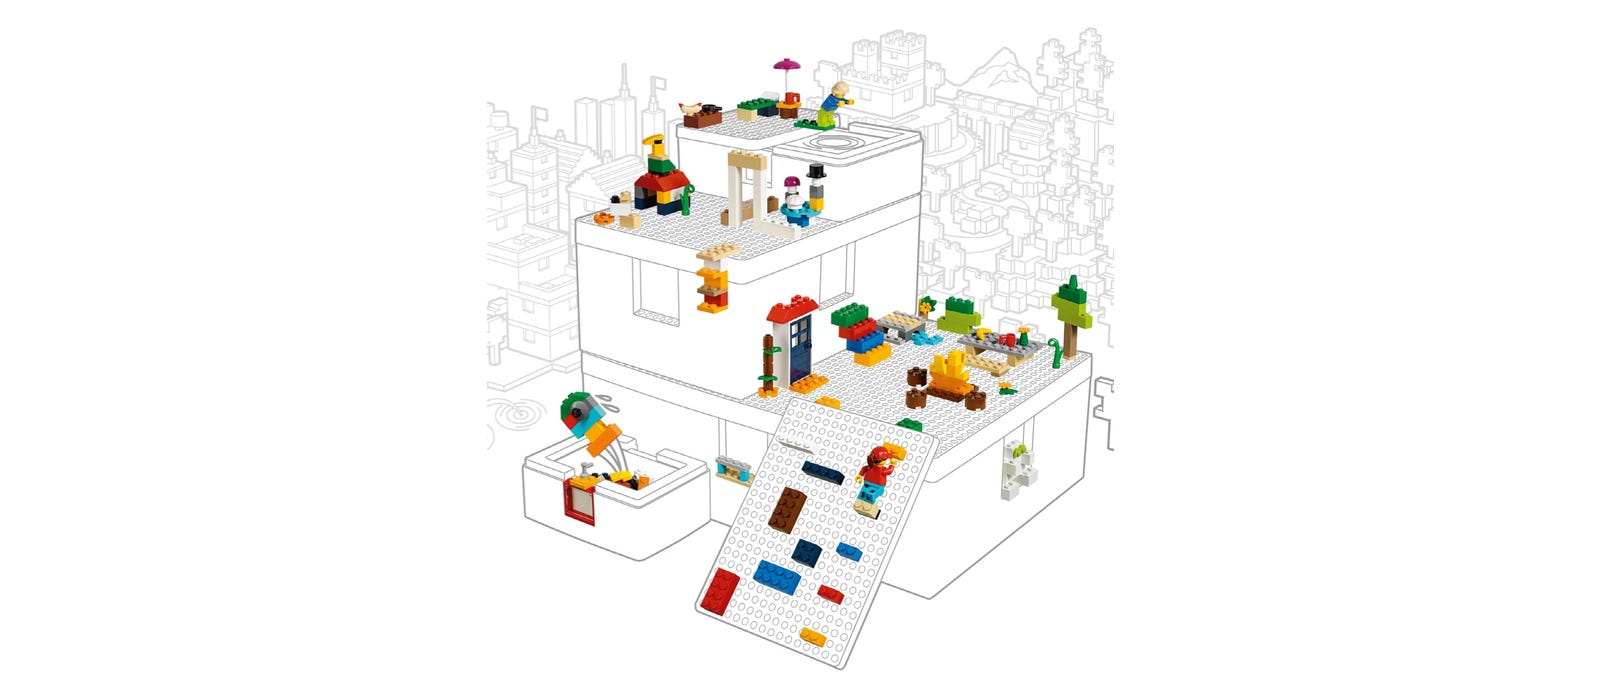 レゴグループ Ikea Bygglek ビッグレクでレゴ ブロック収納 公式レゴ サイト レゴ ショップ公式オンラインストアjp